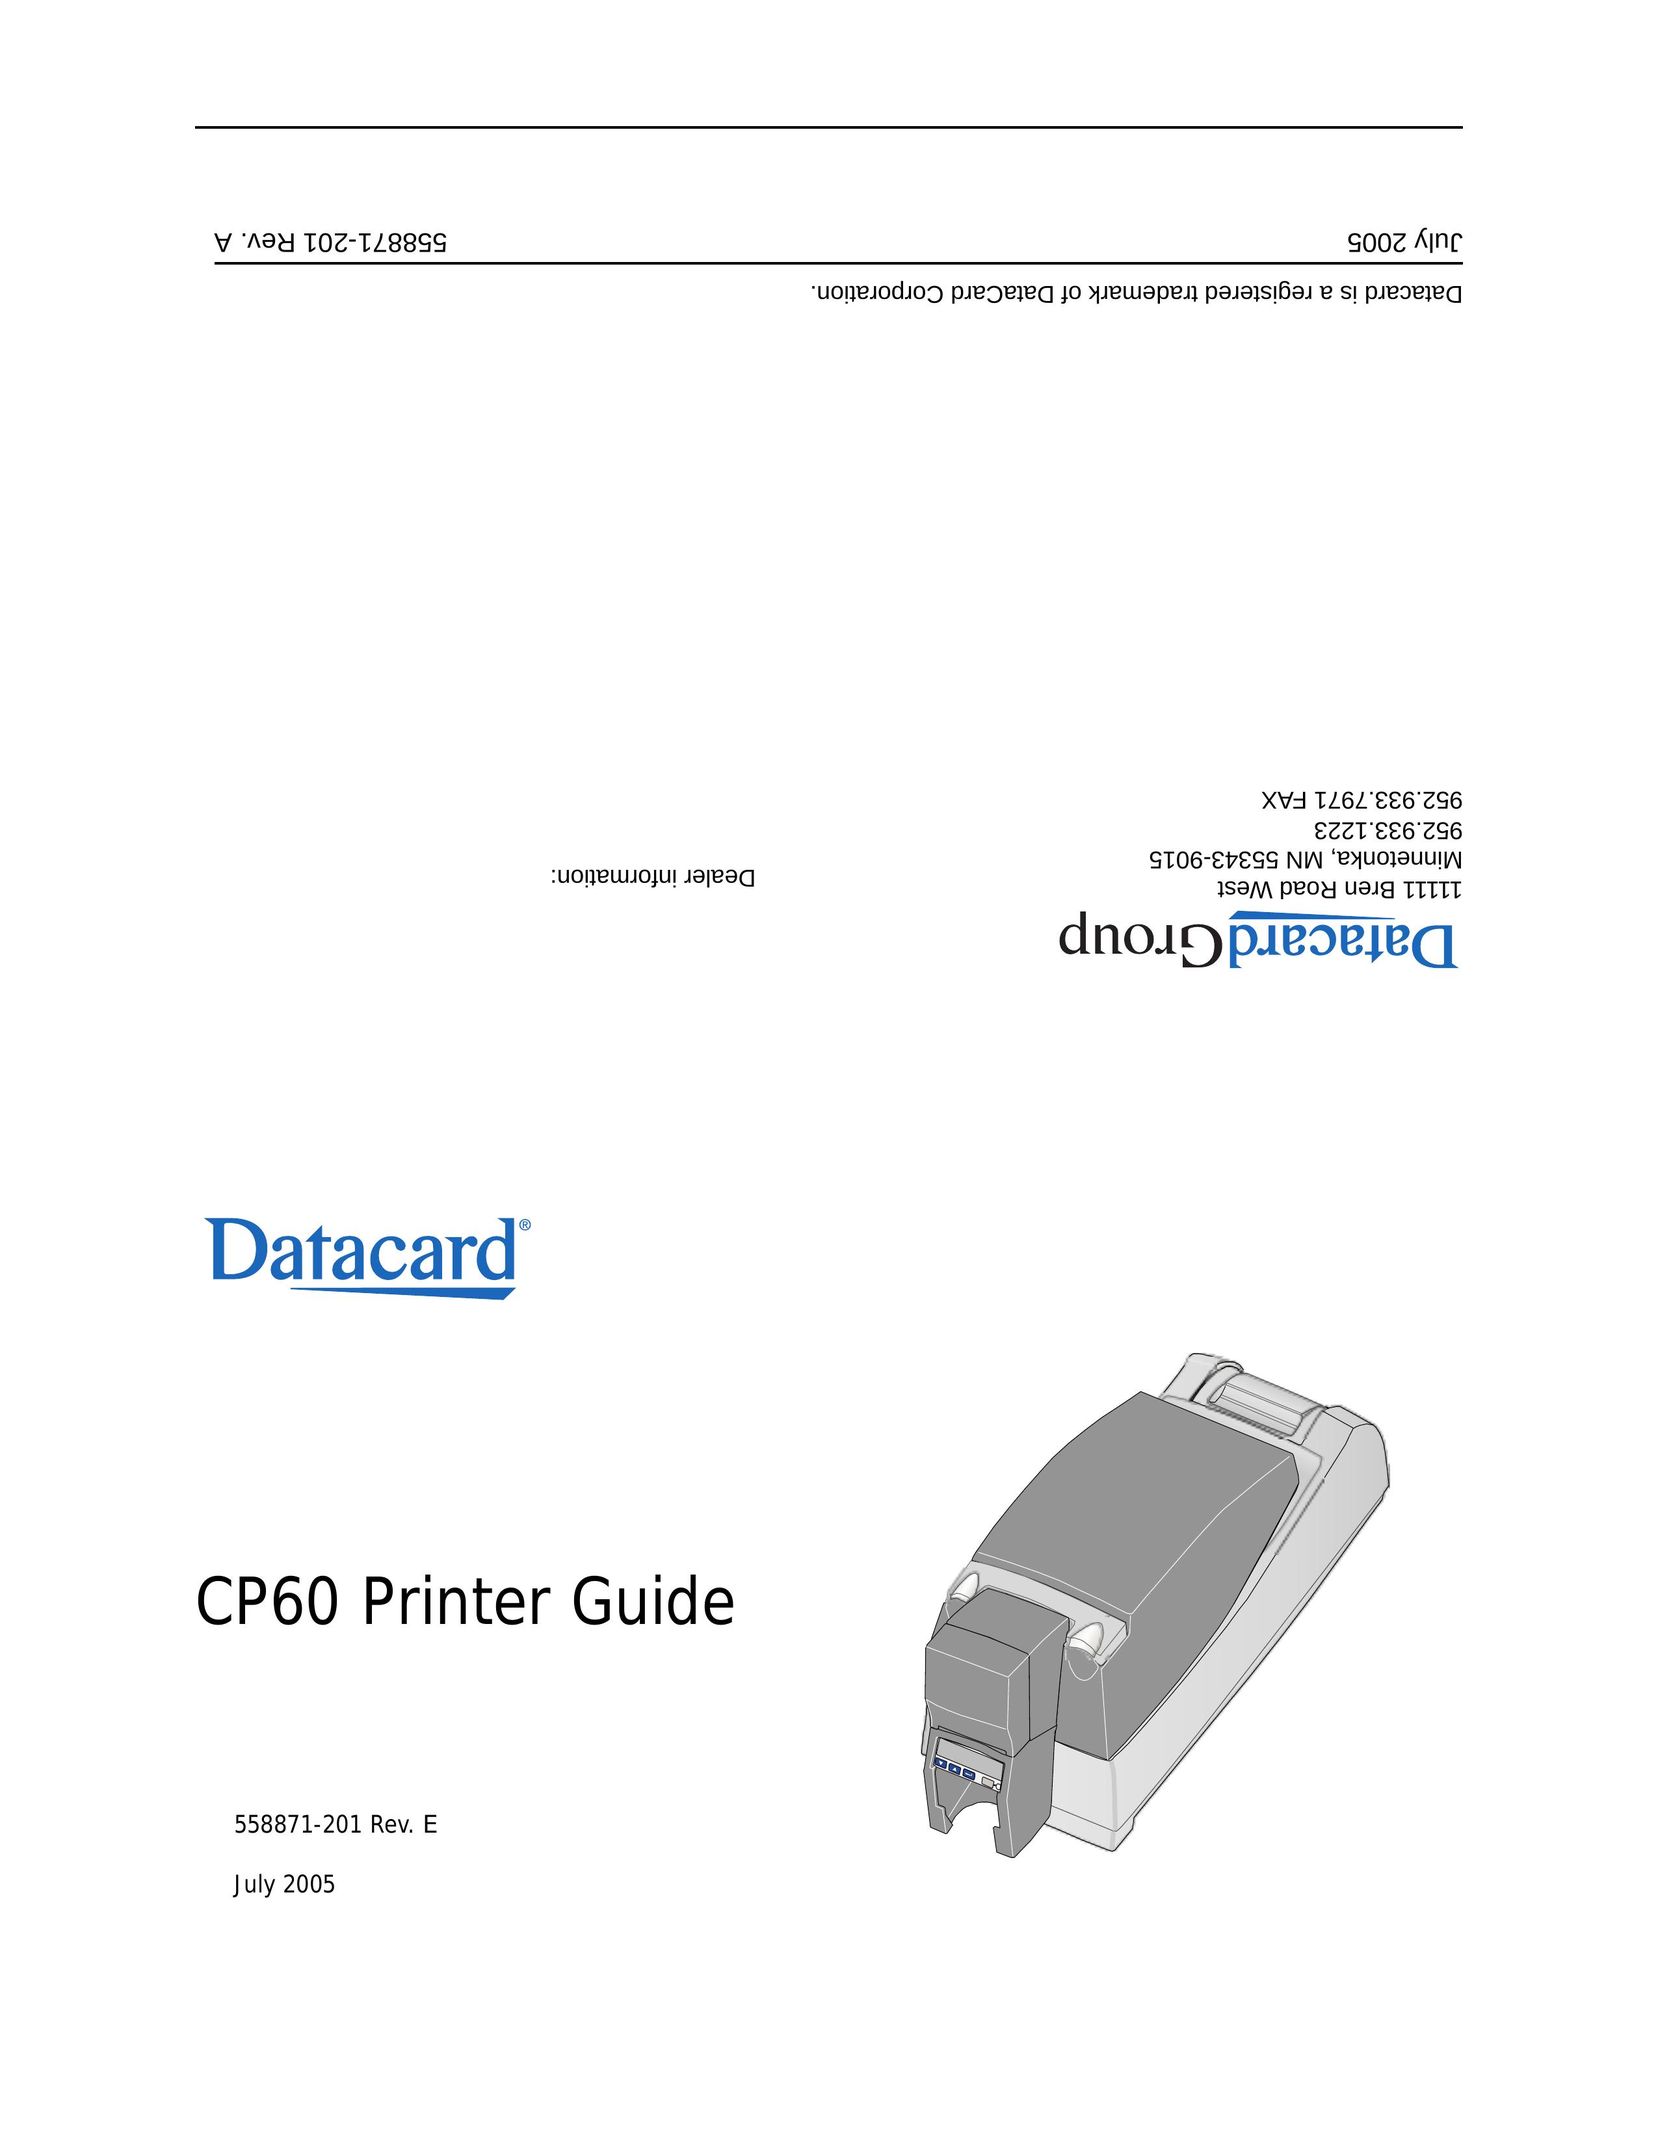 Datacard Group CP60 Printer User Manual